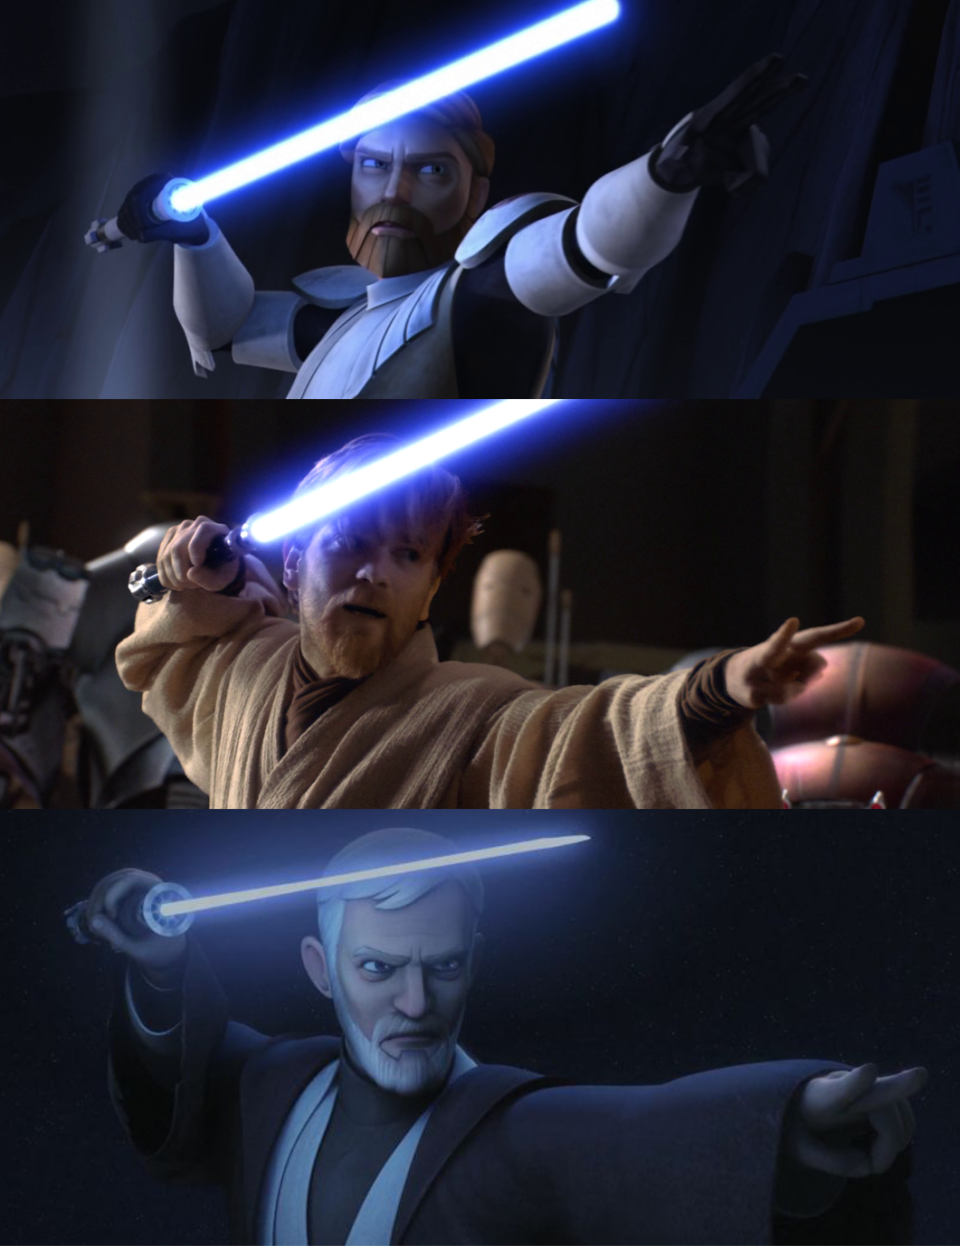 Obi-Wan kenobi